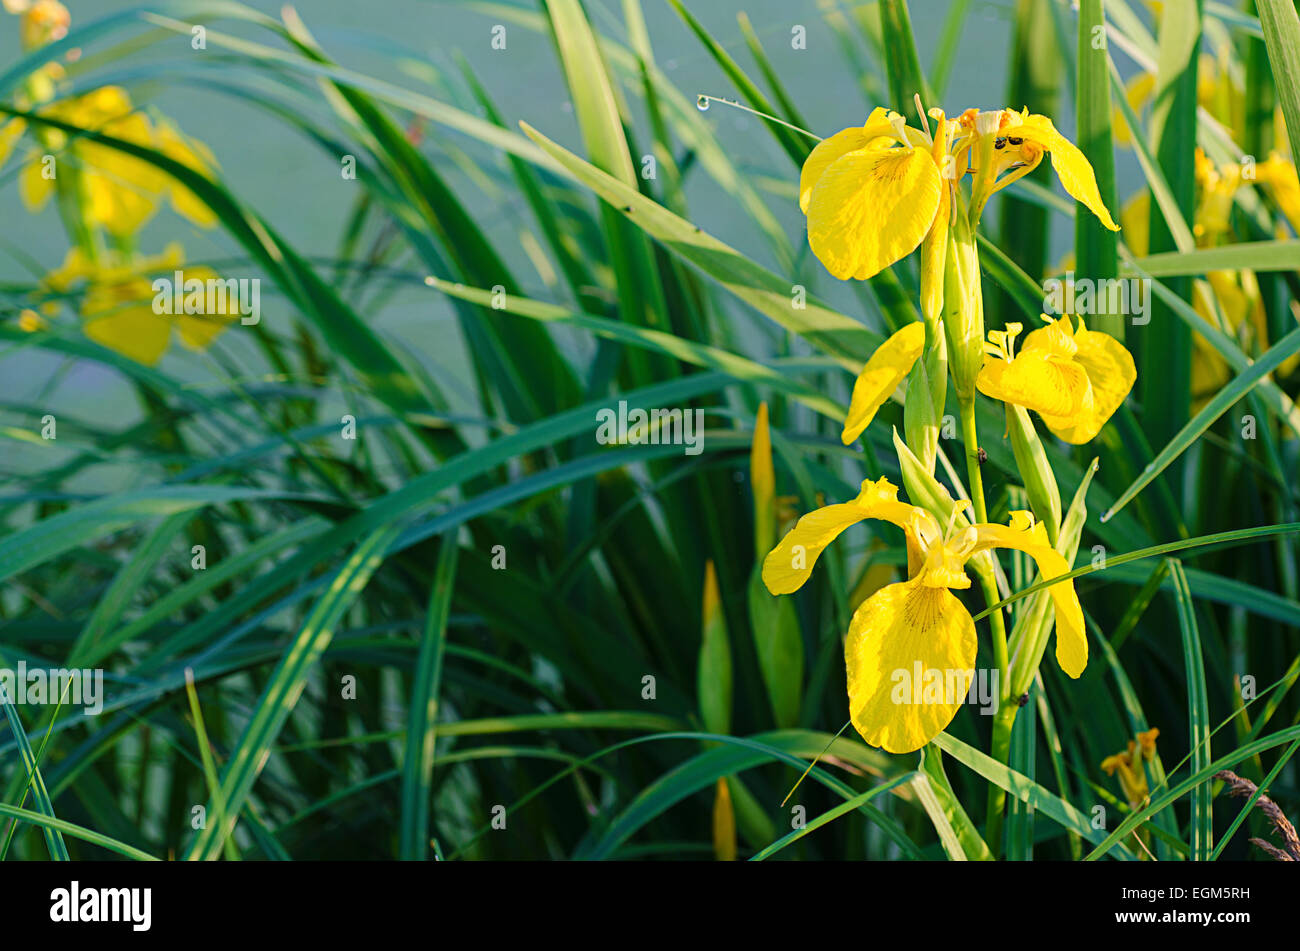 Iris flower in nature Stock Photo